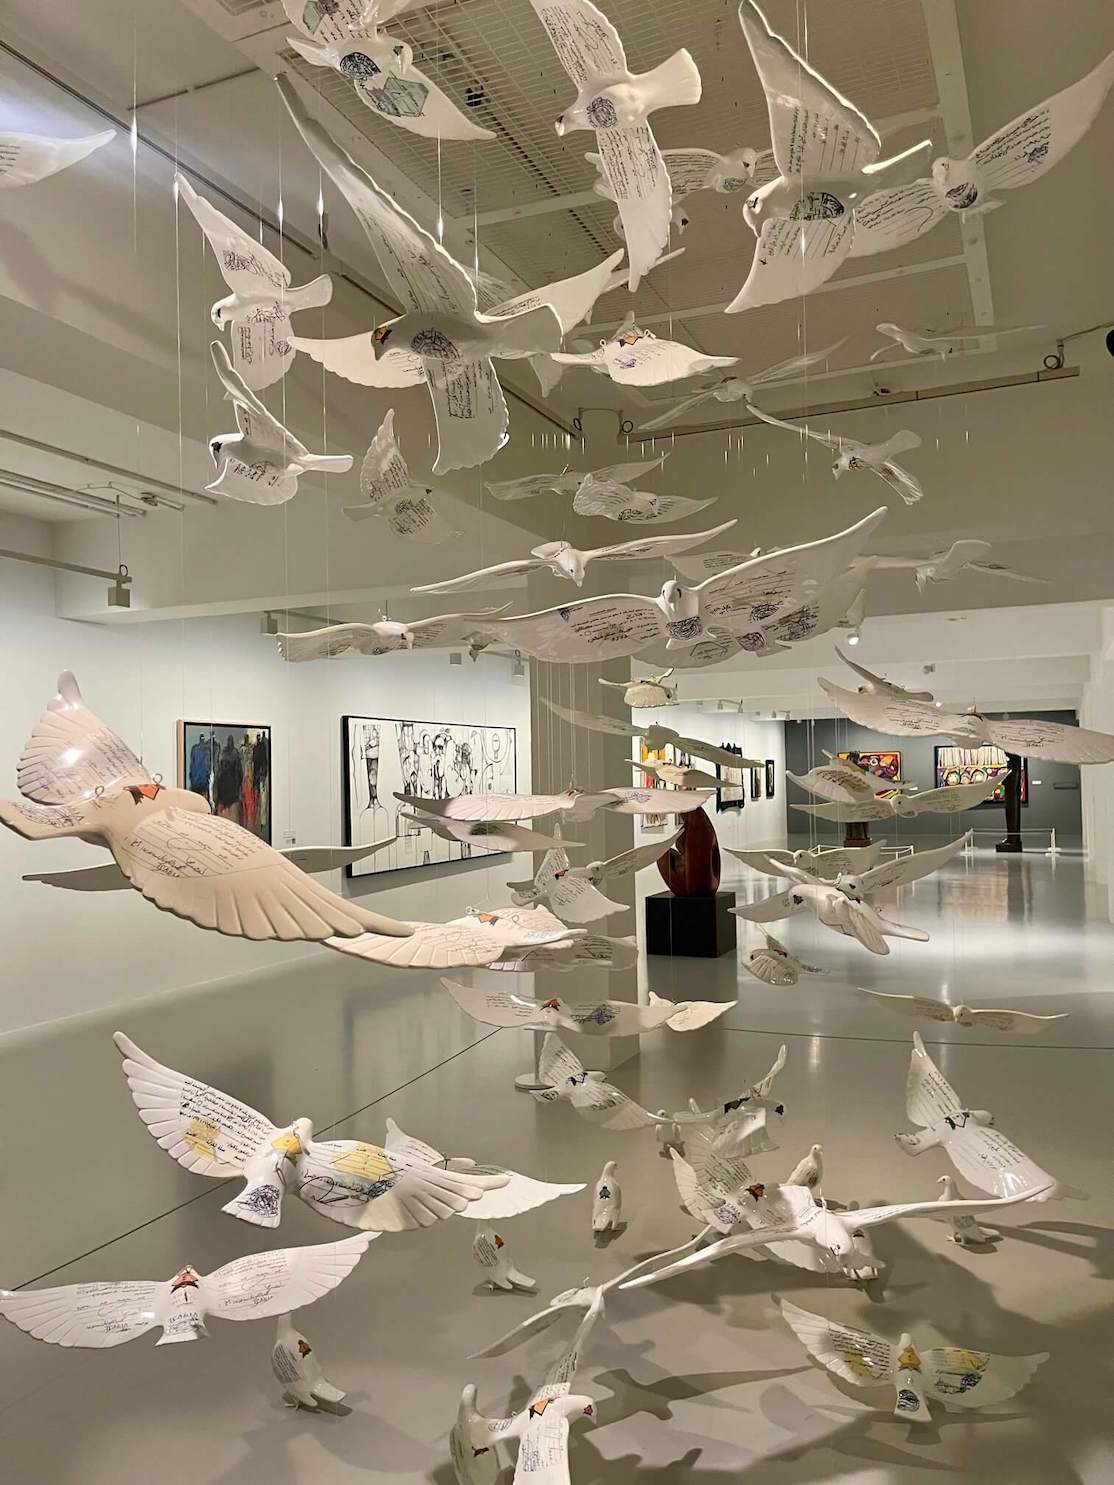 A instalação de arte Suspensa Juntos por Manal Aldowayan no Museu Árabe de Arte Moderna, Doha, Catar